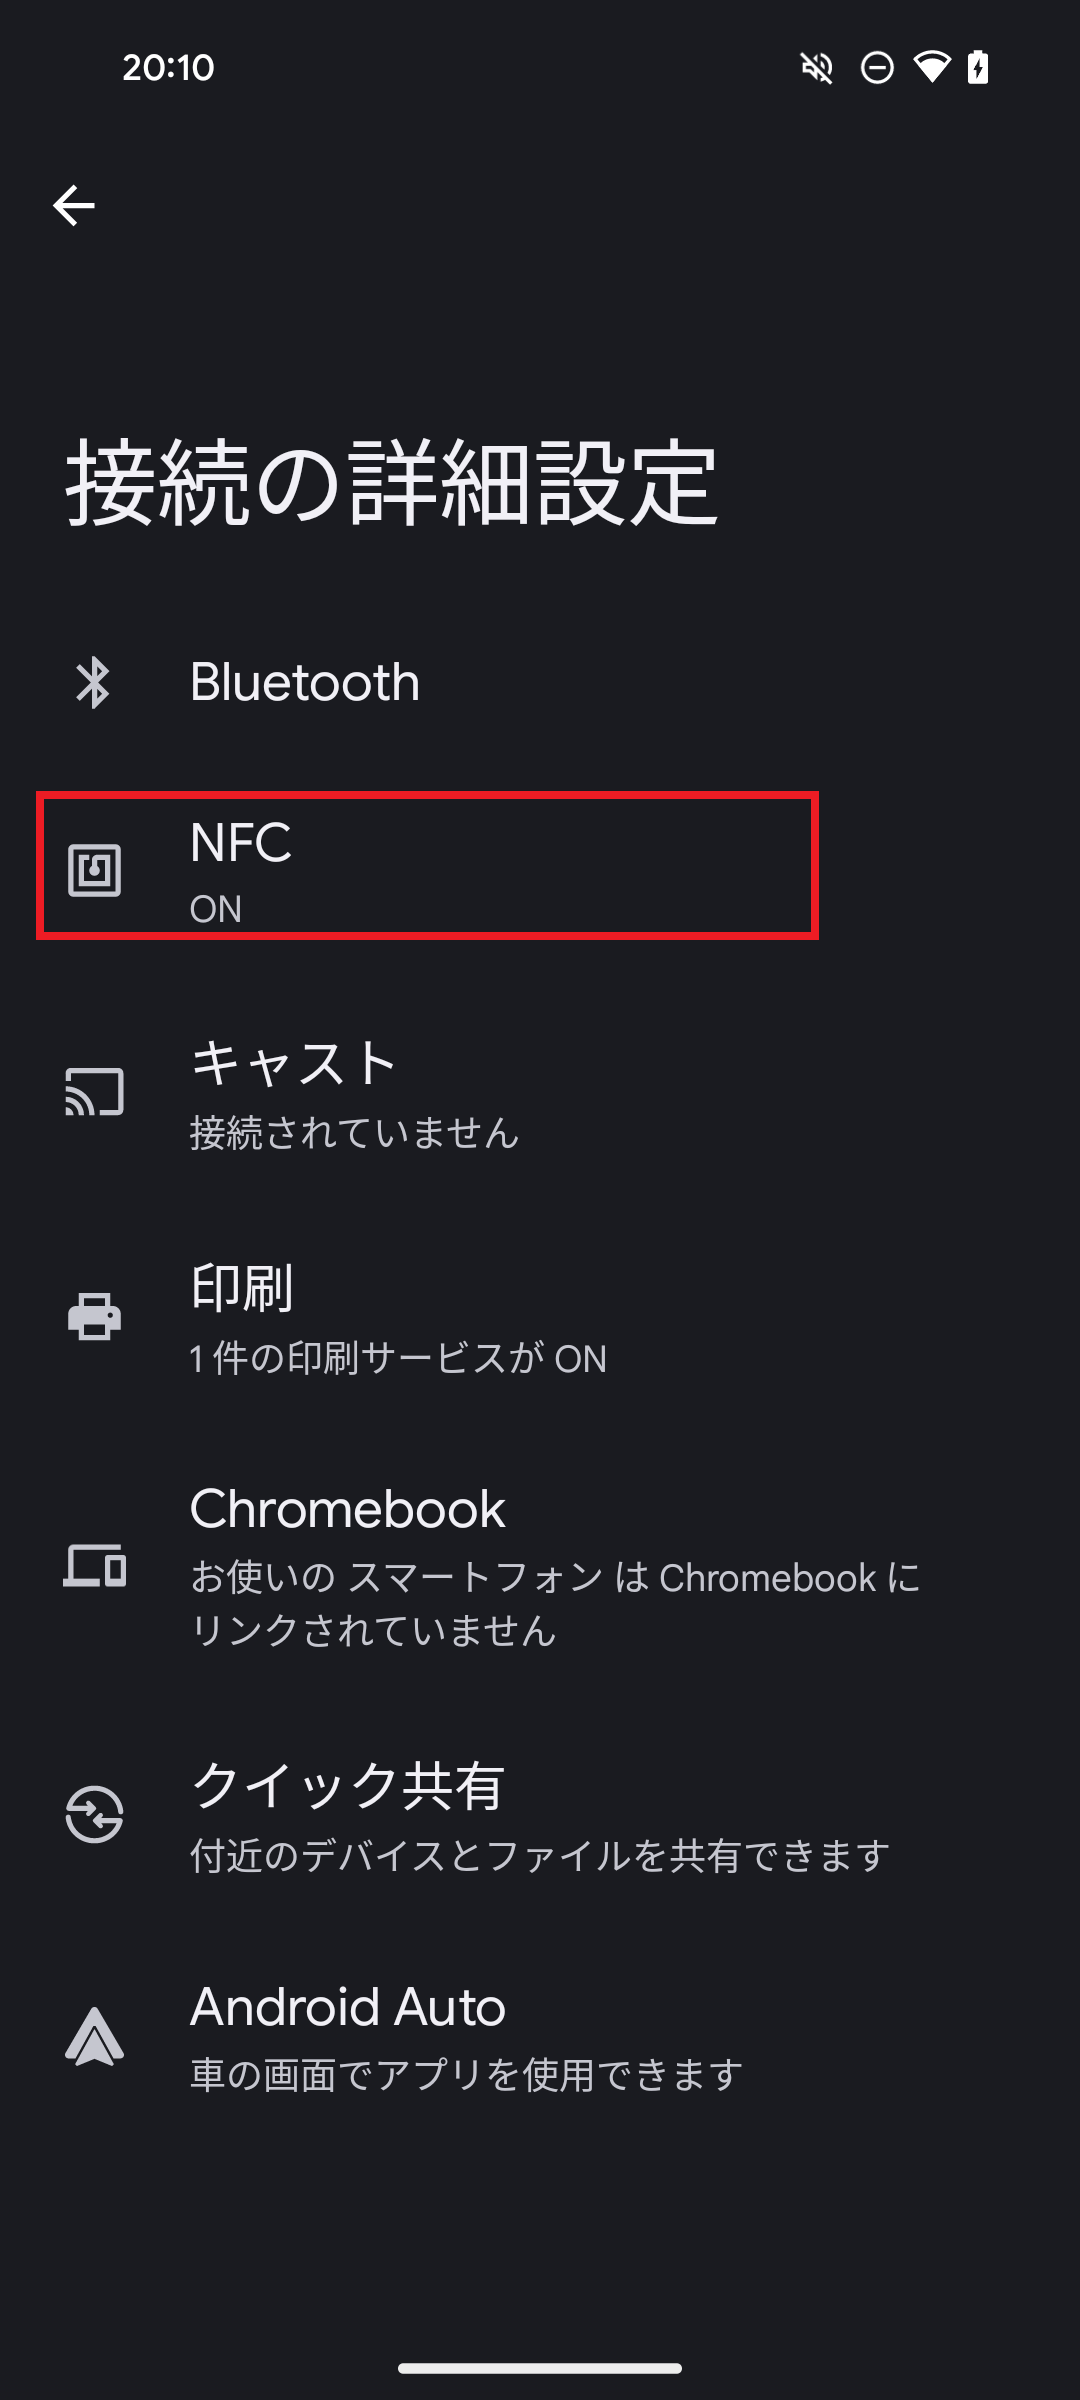 4. 「NFC」を選択